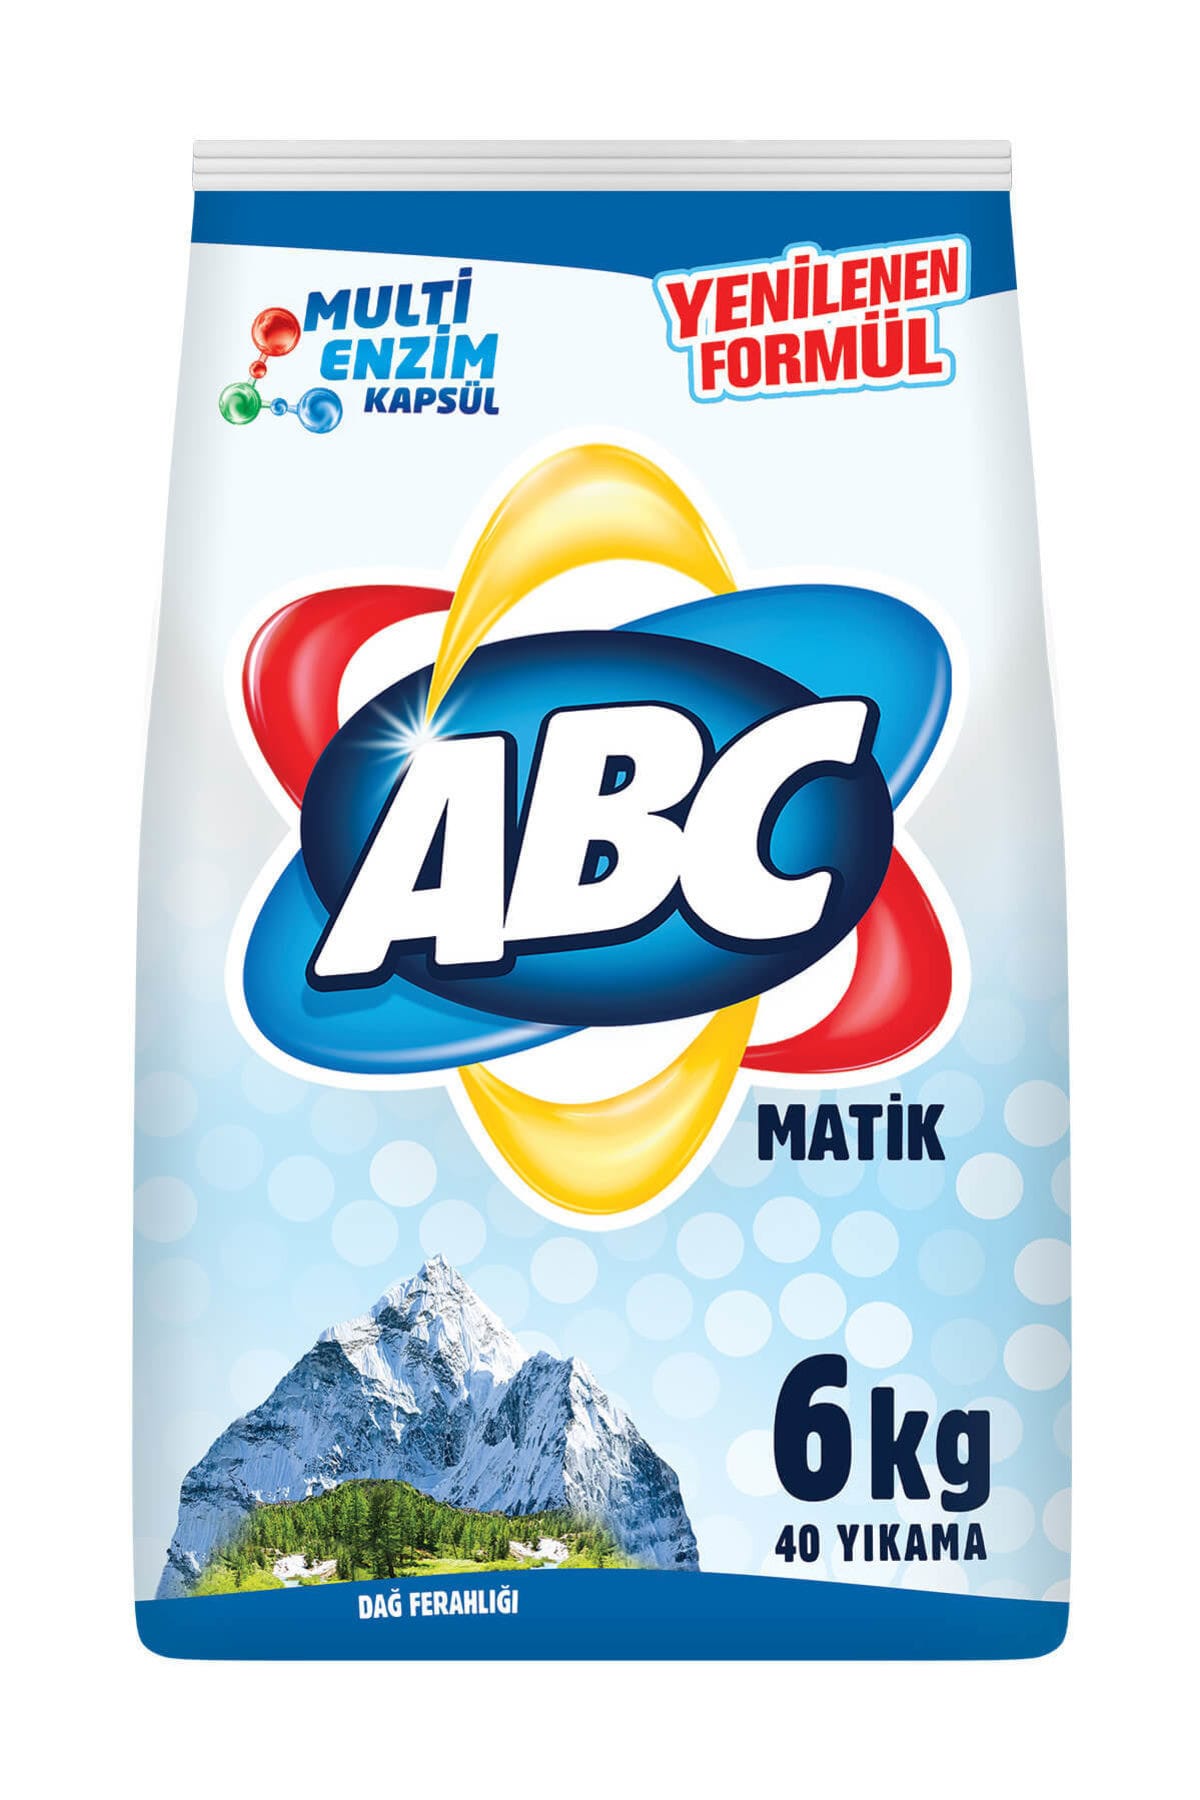 ABC Matik Dağ Ferahlığı Toz Çamaşır Deterjanı 40 Yıkama 6 KG